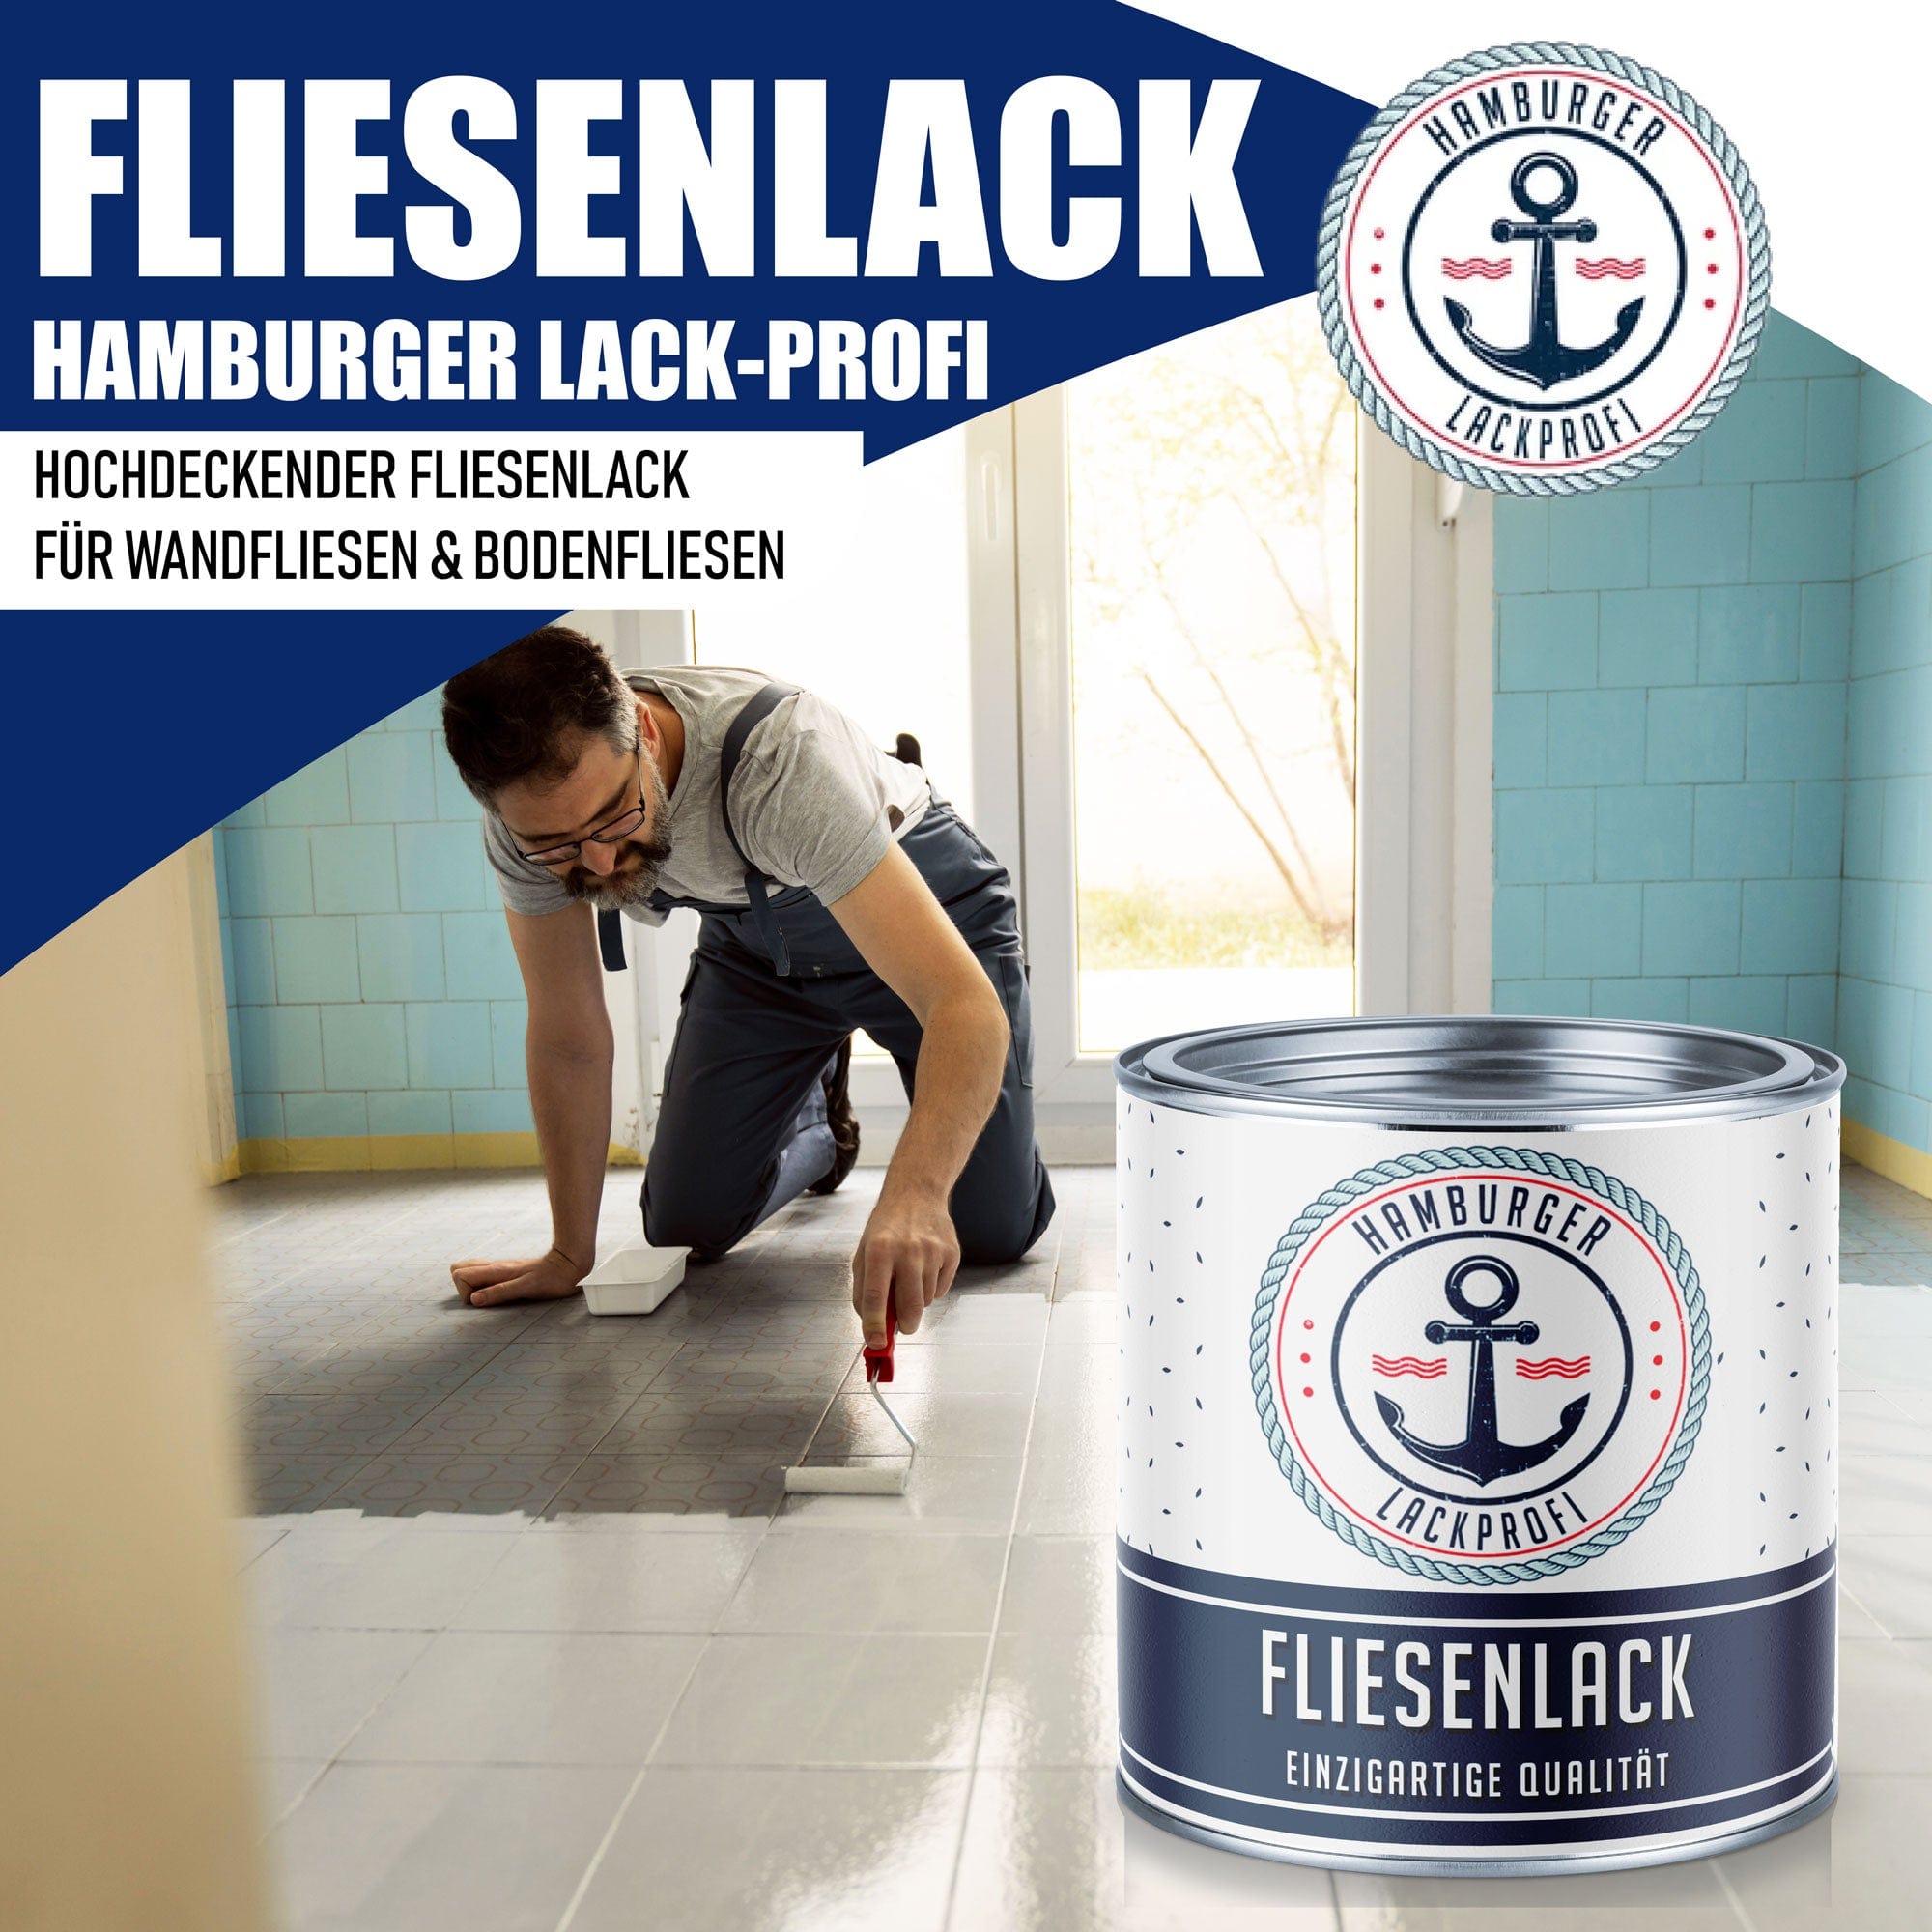 Hamburger Lack-Profi Hamburger Lack-Profi Fliesenlack Schwarz RAL 9005 - hochdeckende Fliesenfarbe